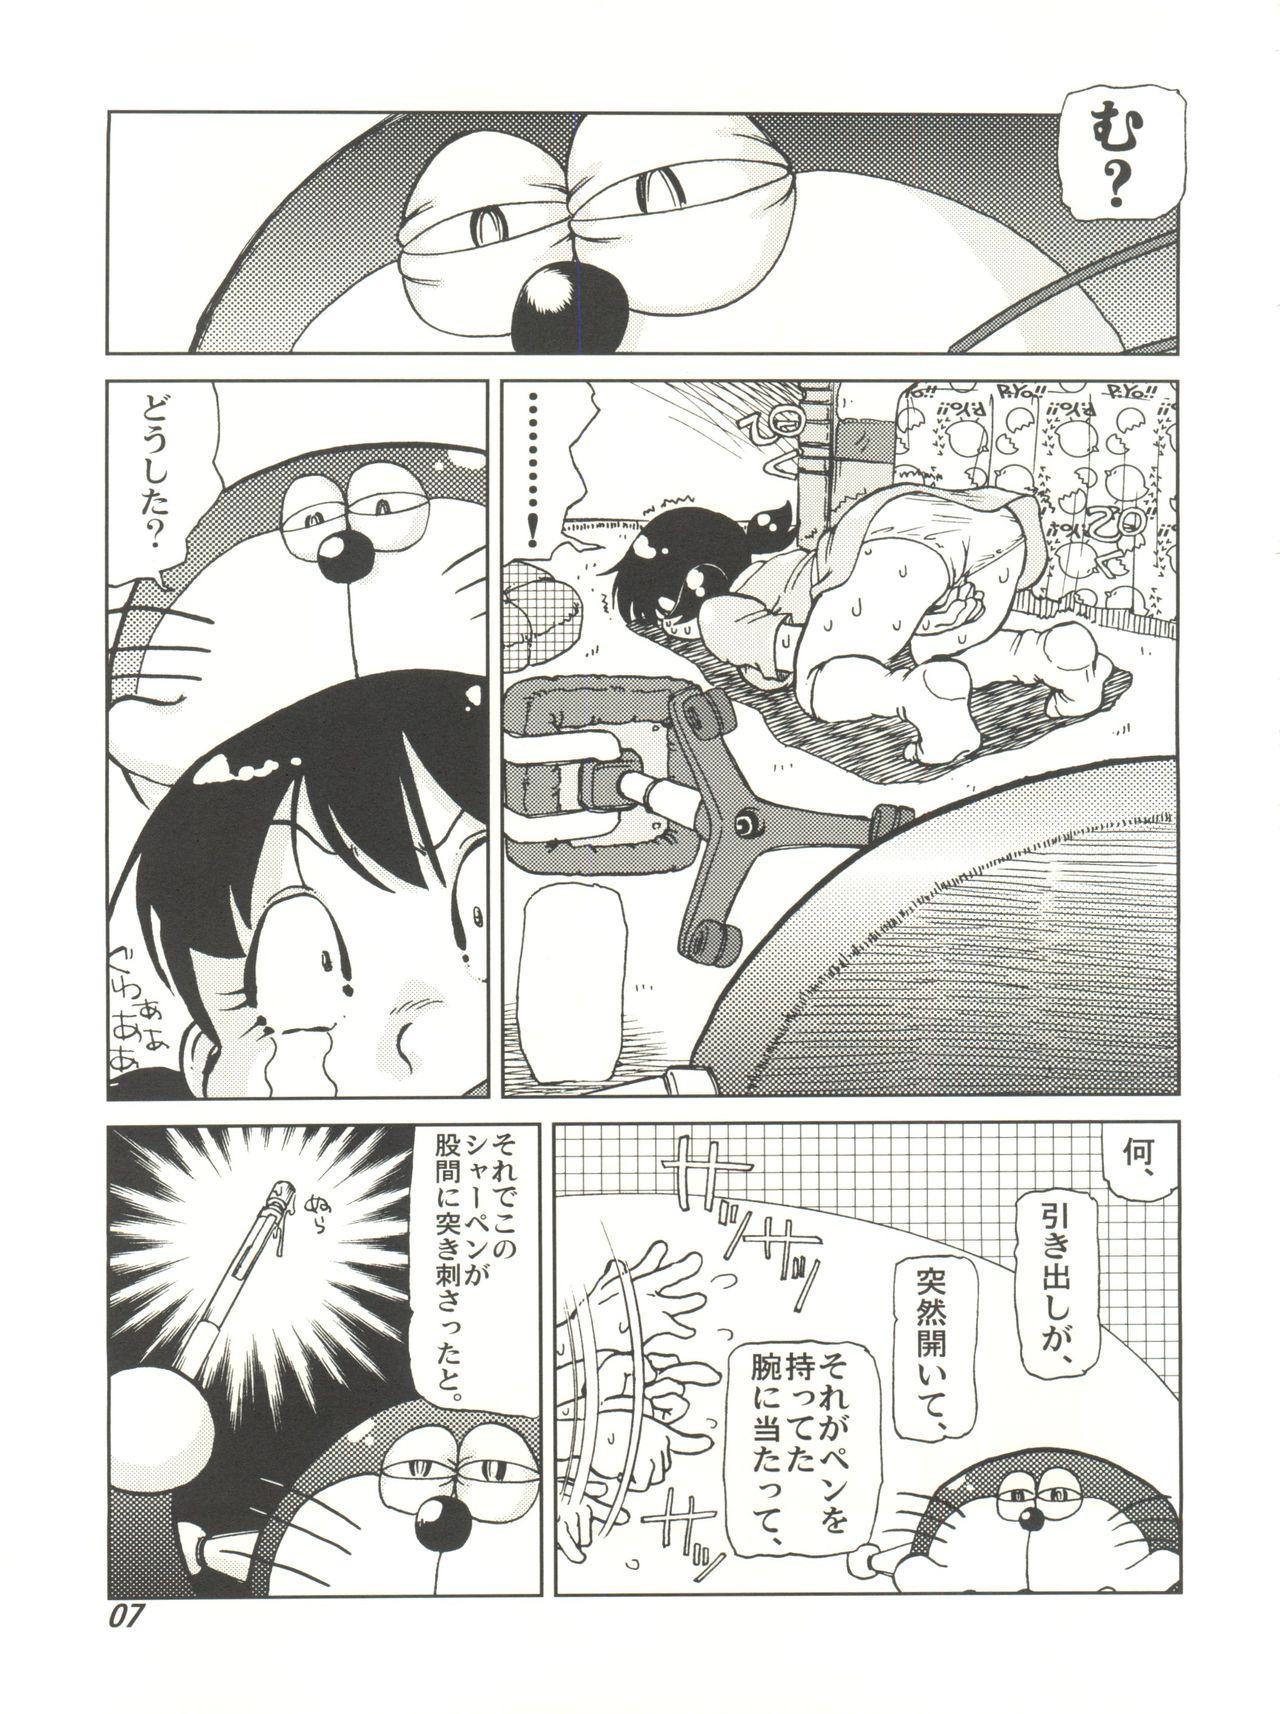 Scandal COUNTER DORA SHIZUKA & KAKUGARI GUARDIAN - Doraemon Blows - Page 6